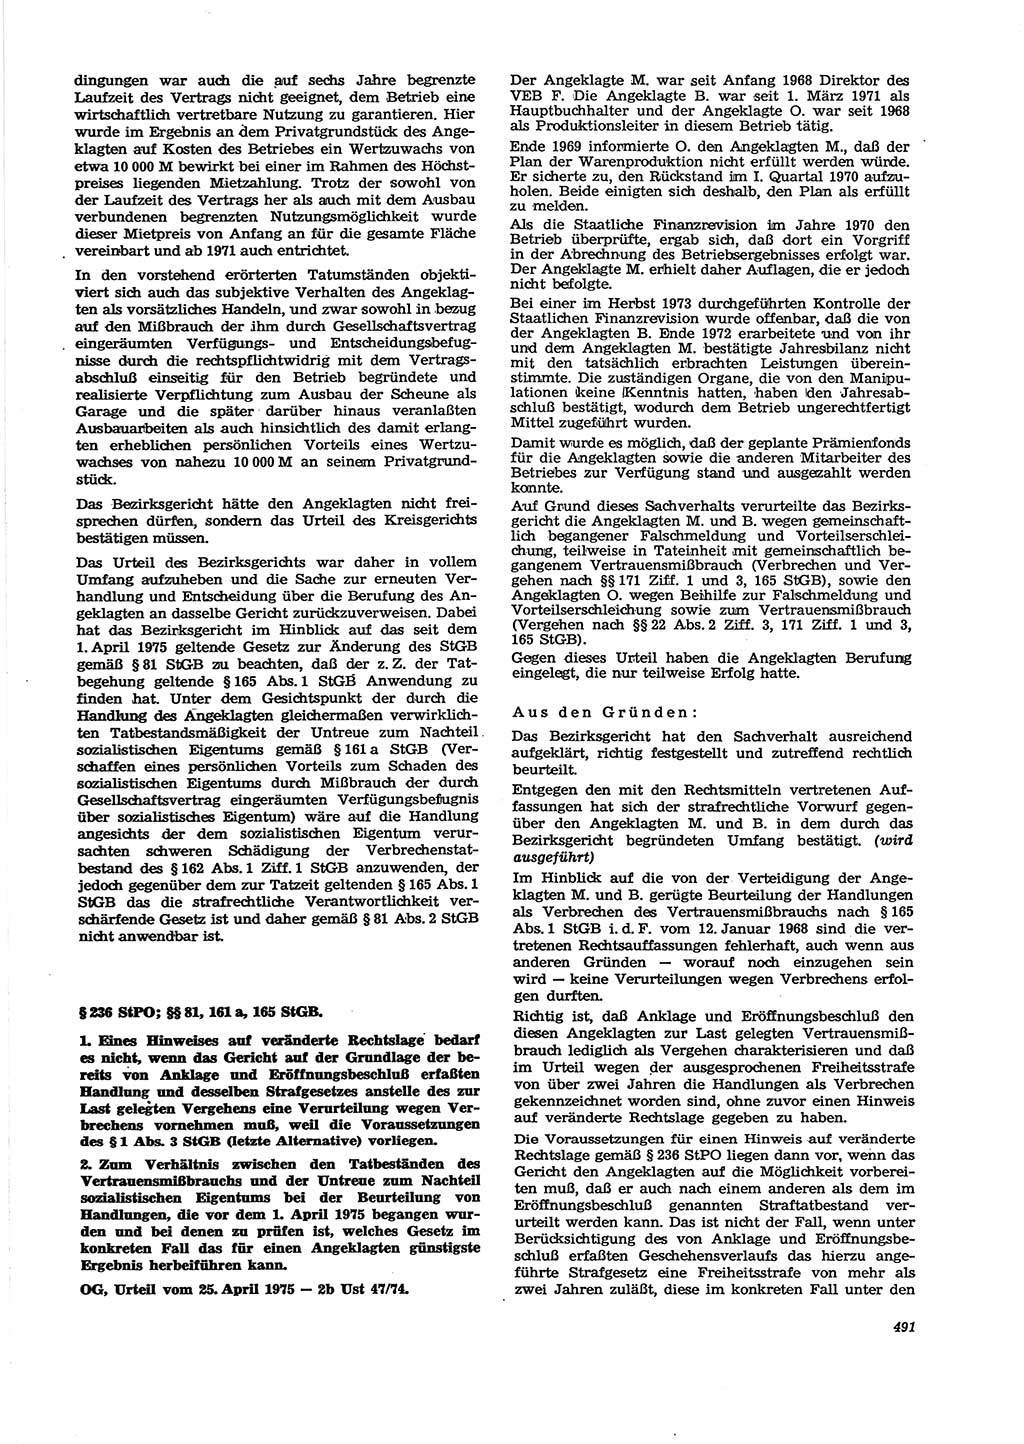 Neue Justiz (NJ), Zeitschrift für Recht und Rechtswissenschaft [Deutsche Demokratische Republik (DDR)], 29. Jahrgang 1975, Seite 491 (NJ DDR 1975, S. 491)